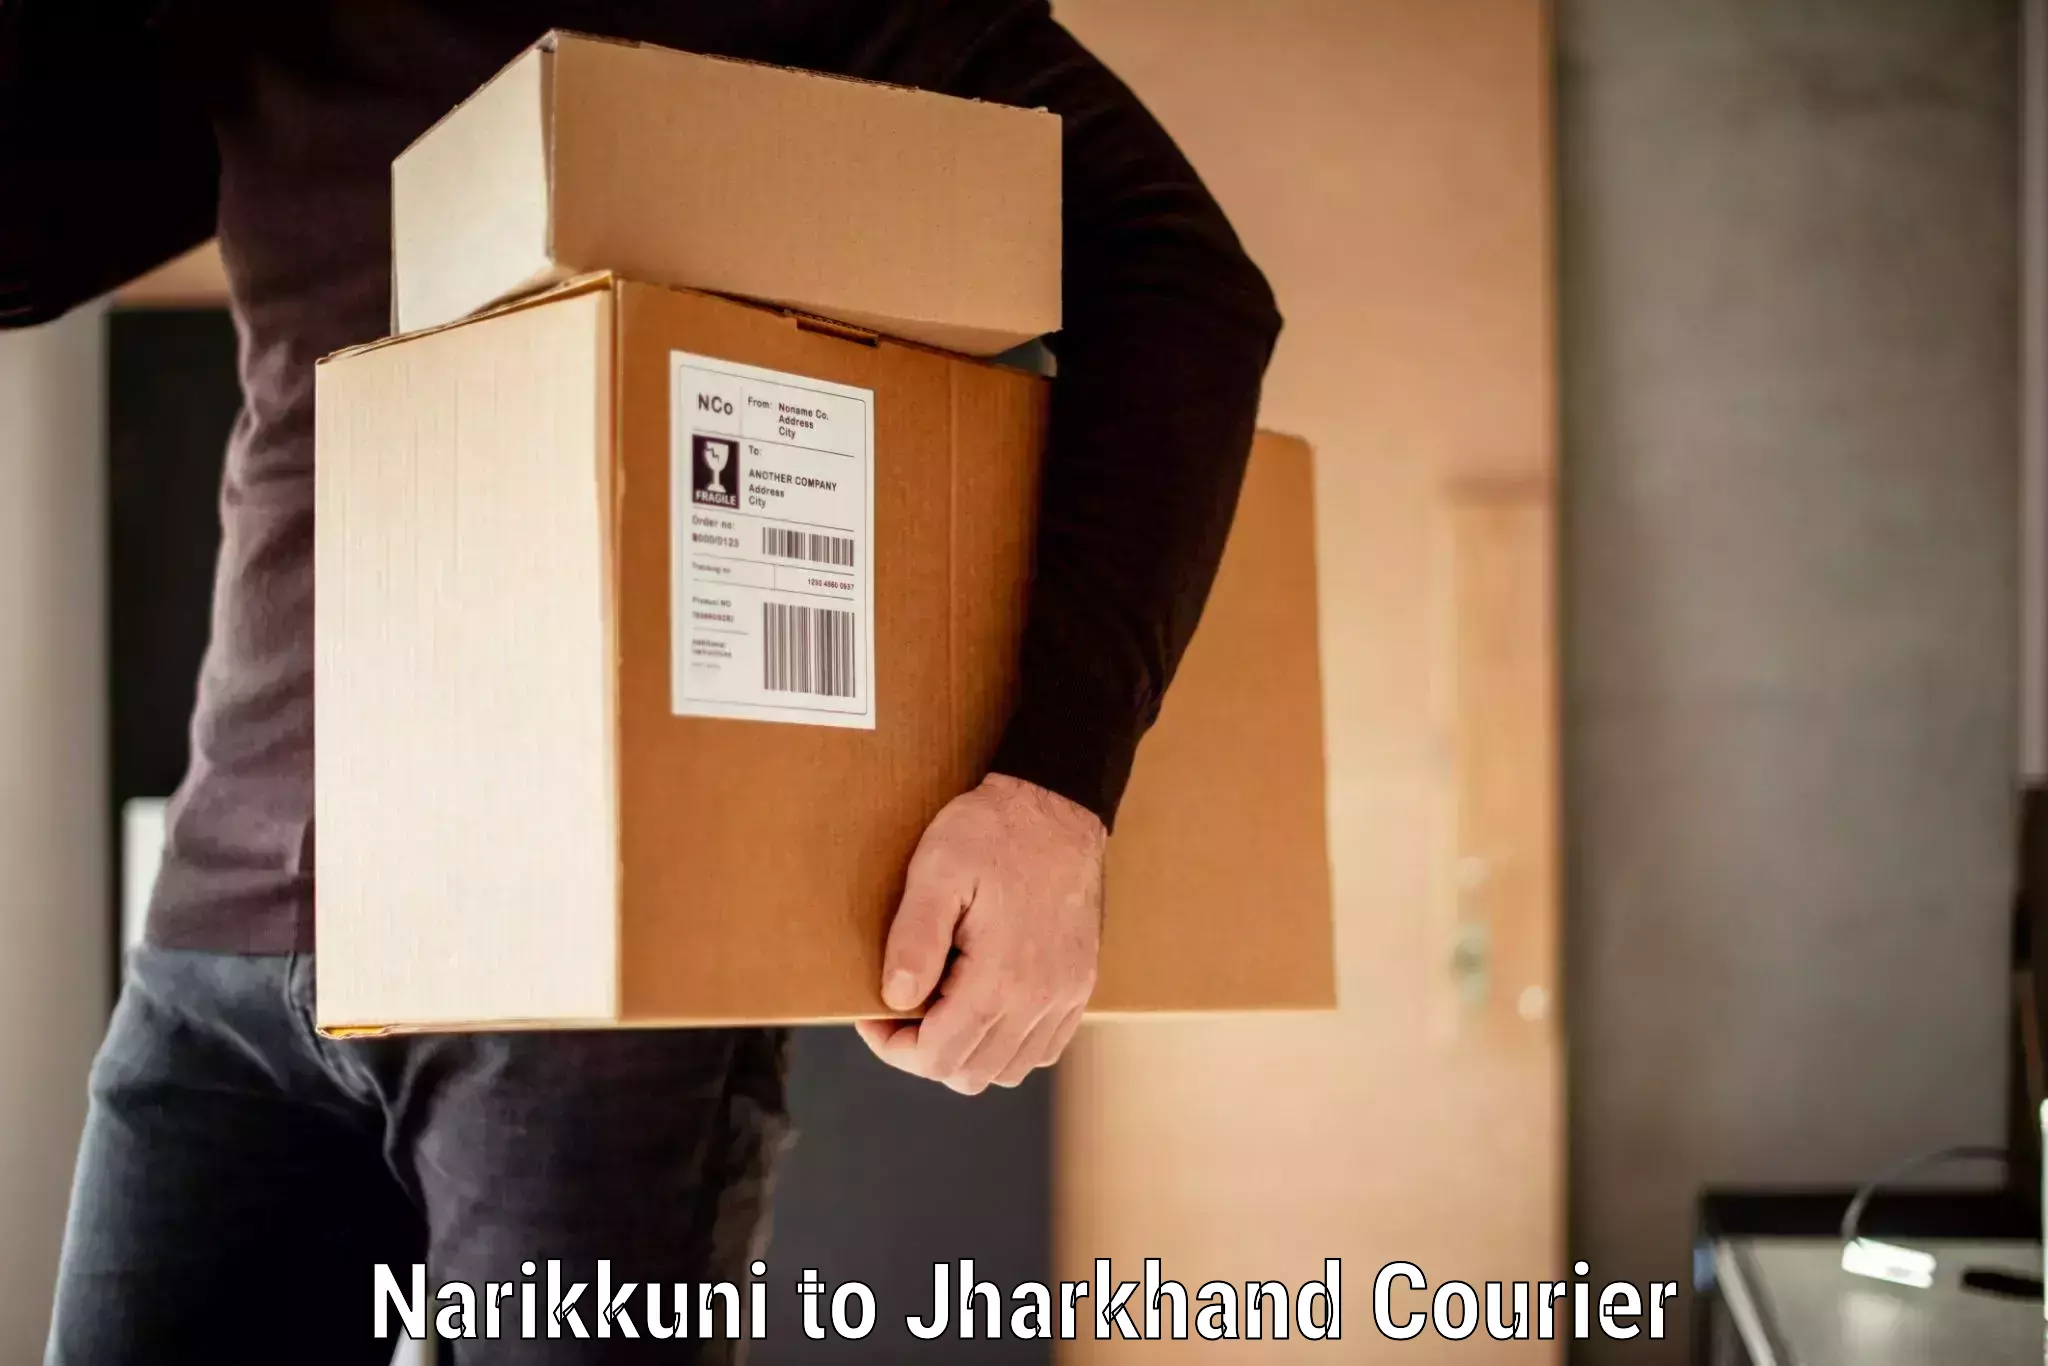 Baggage transport scheduler Narikkuni to Koderma